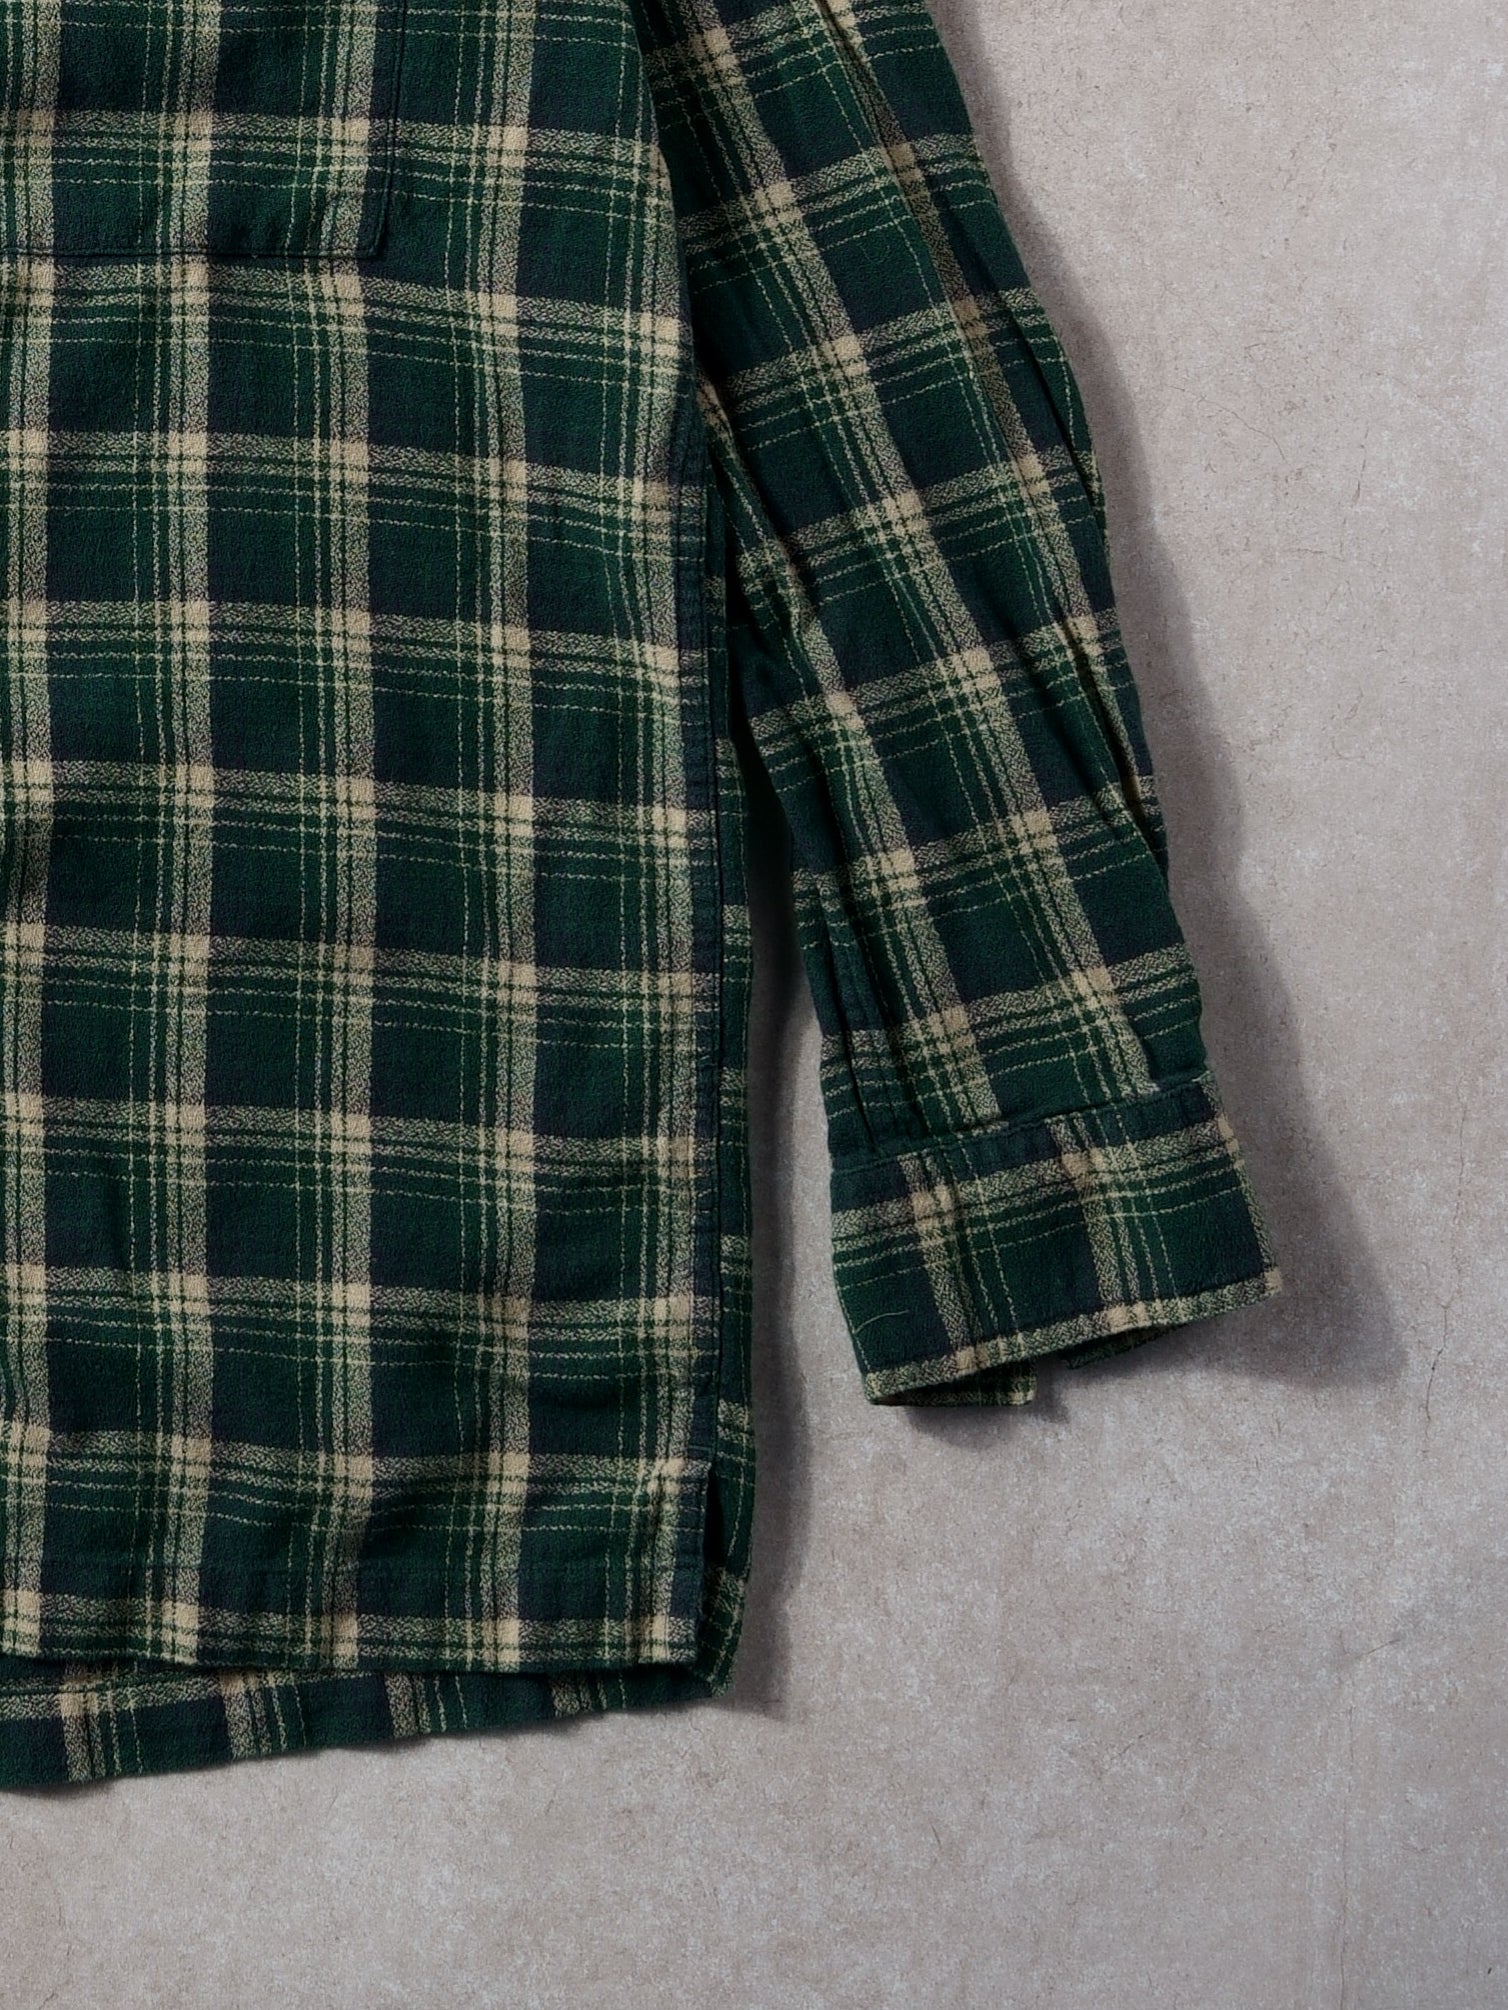 Vintage 90s Green Plaid Chaps Rauph Lauren Button Up Flannel ()